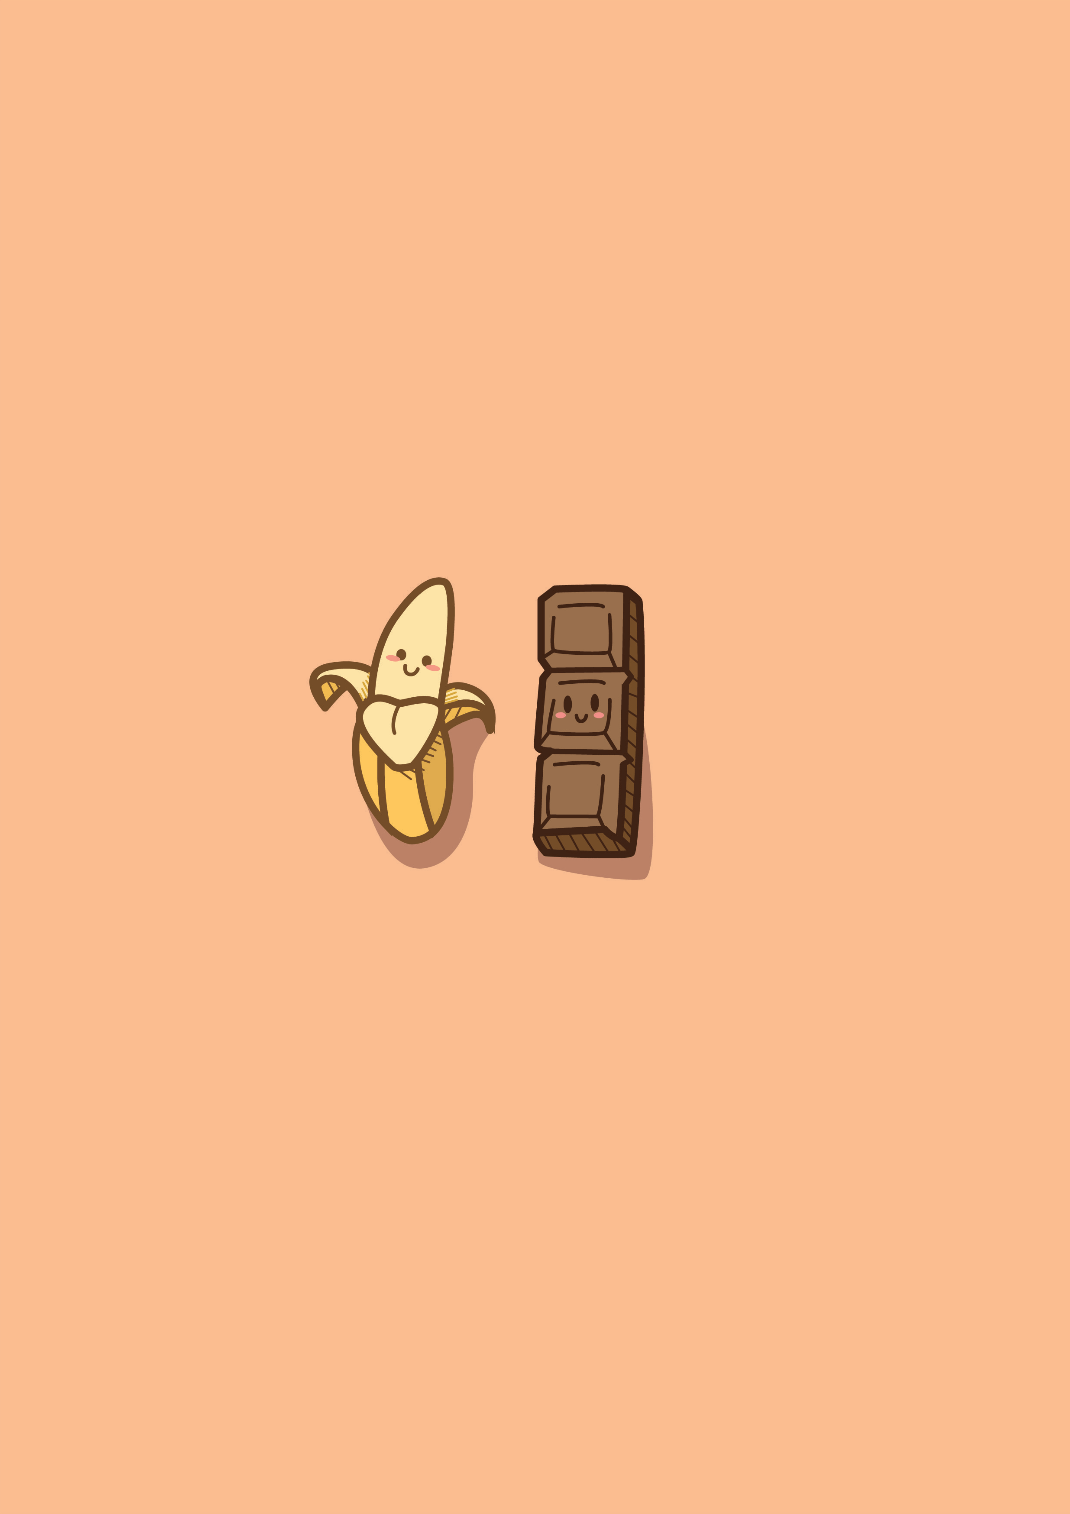 Choco banana. Wallpaper iphone cute, Cute simple wallpaper, Cute cartoon wallpaper